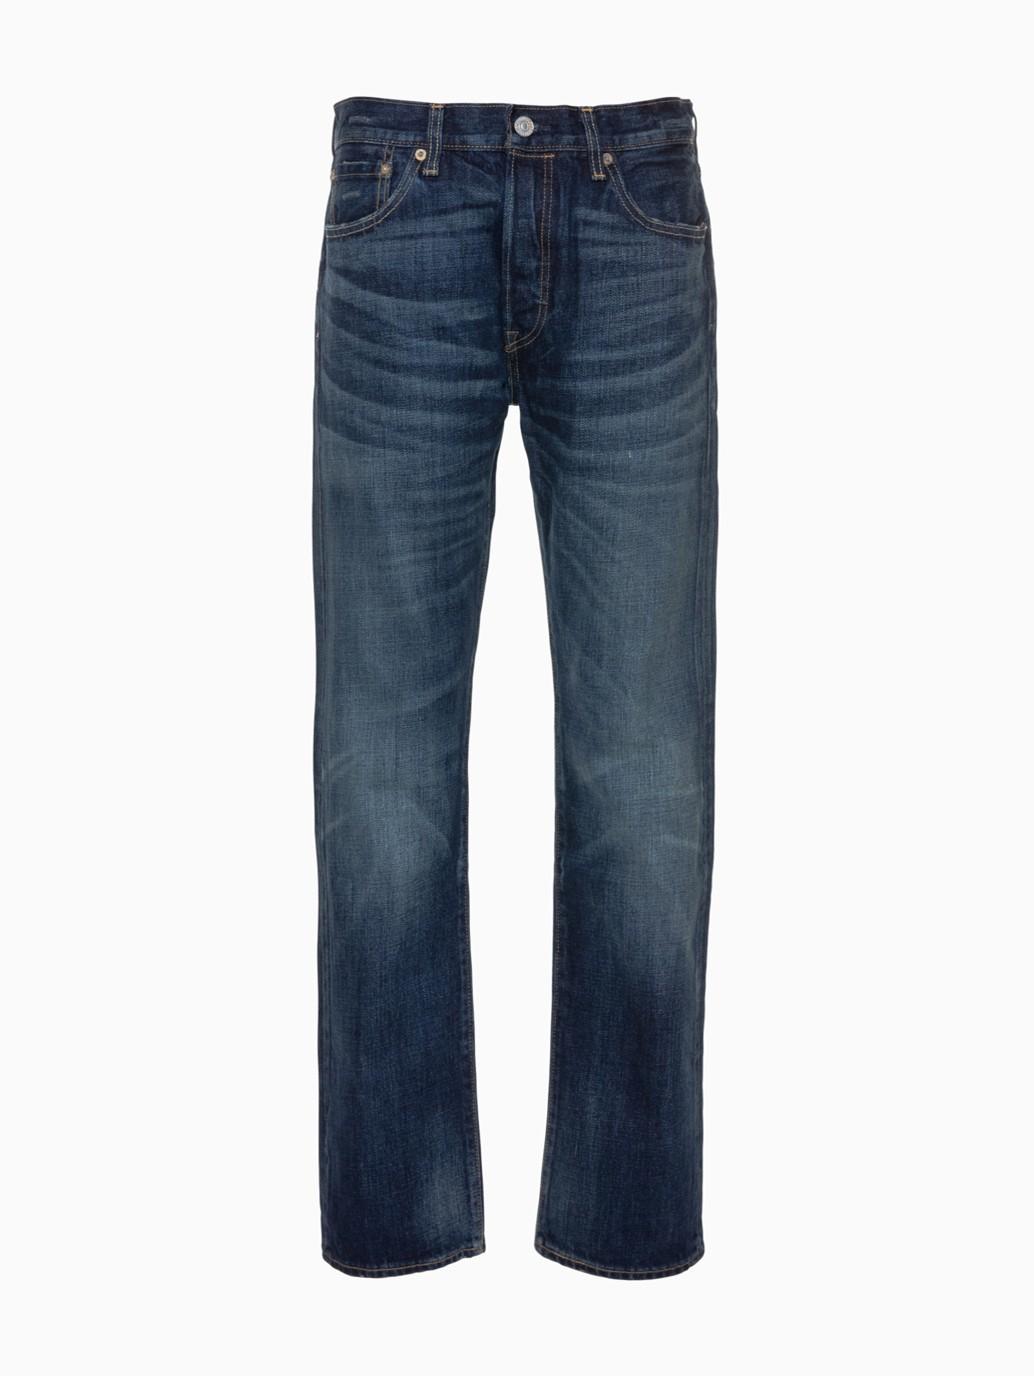 Buy Levi's® Men's 501® Original Fit Jeans | Levi’s® Official Online ...